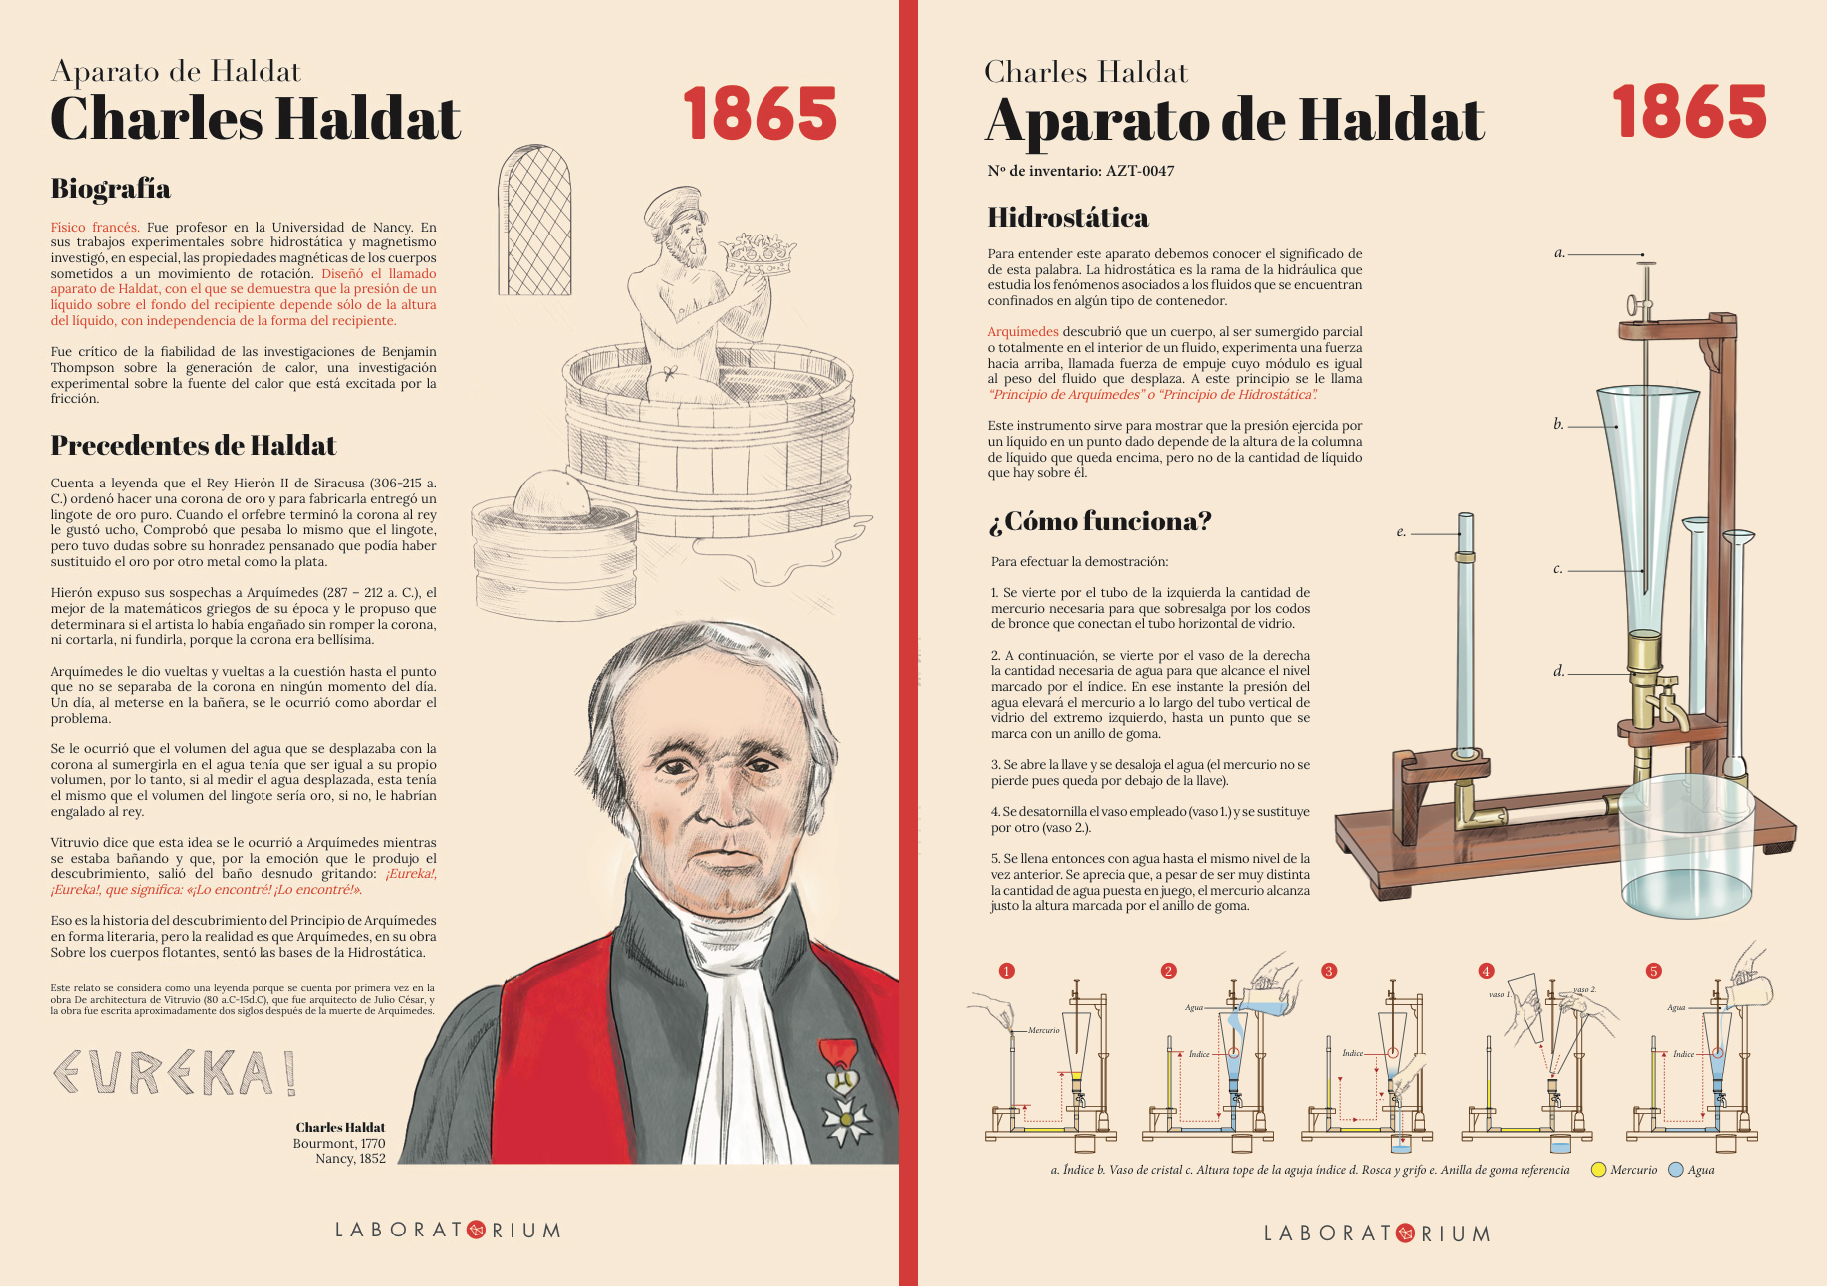 Laboratorium de Bergara - Fichas didácticas para instrumental científico by Nuria Hernández Pintor - Creative Work